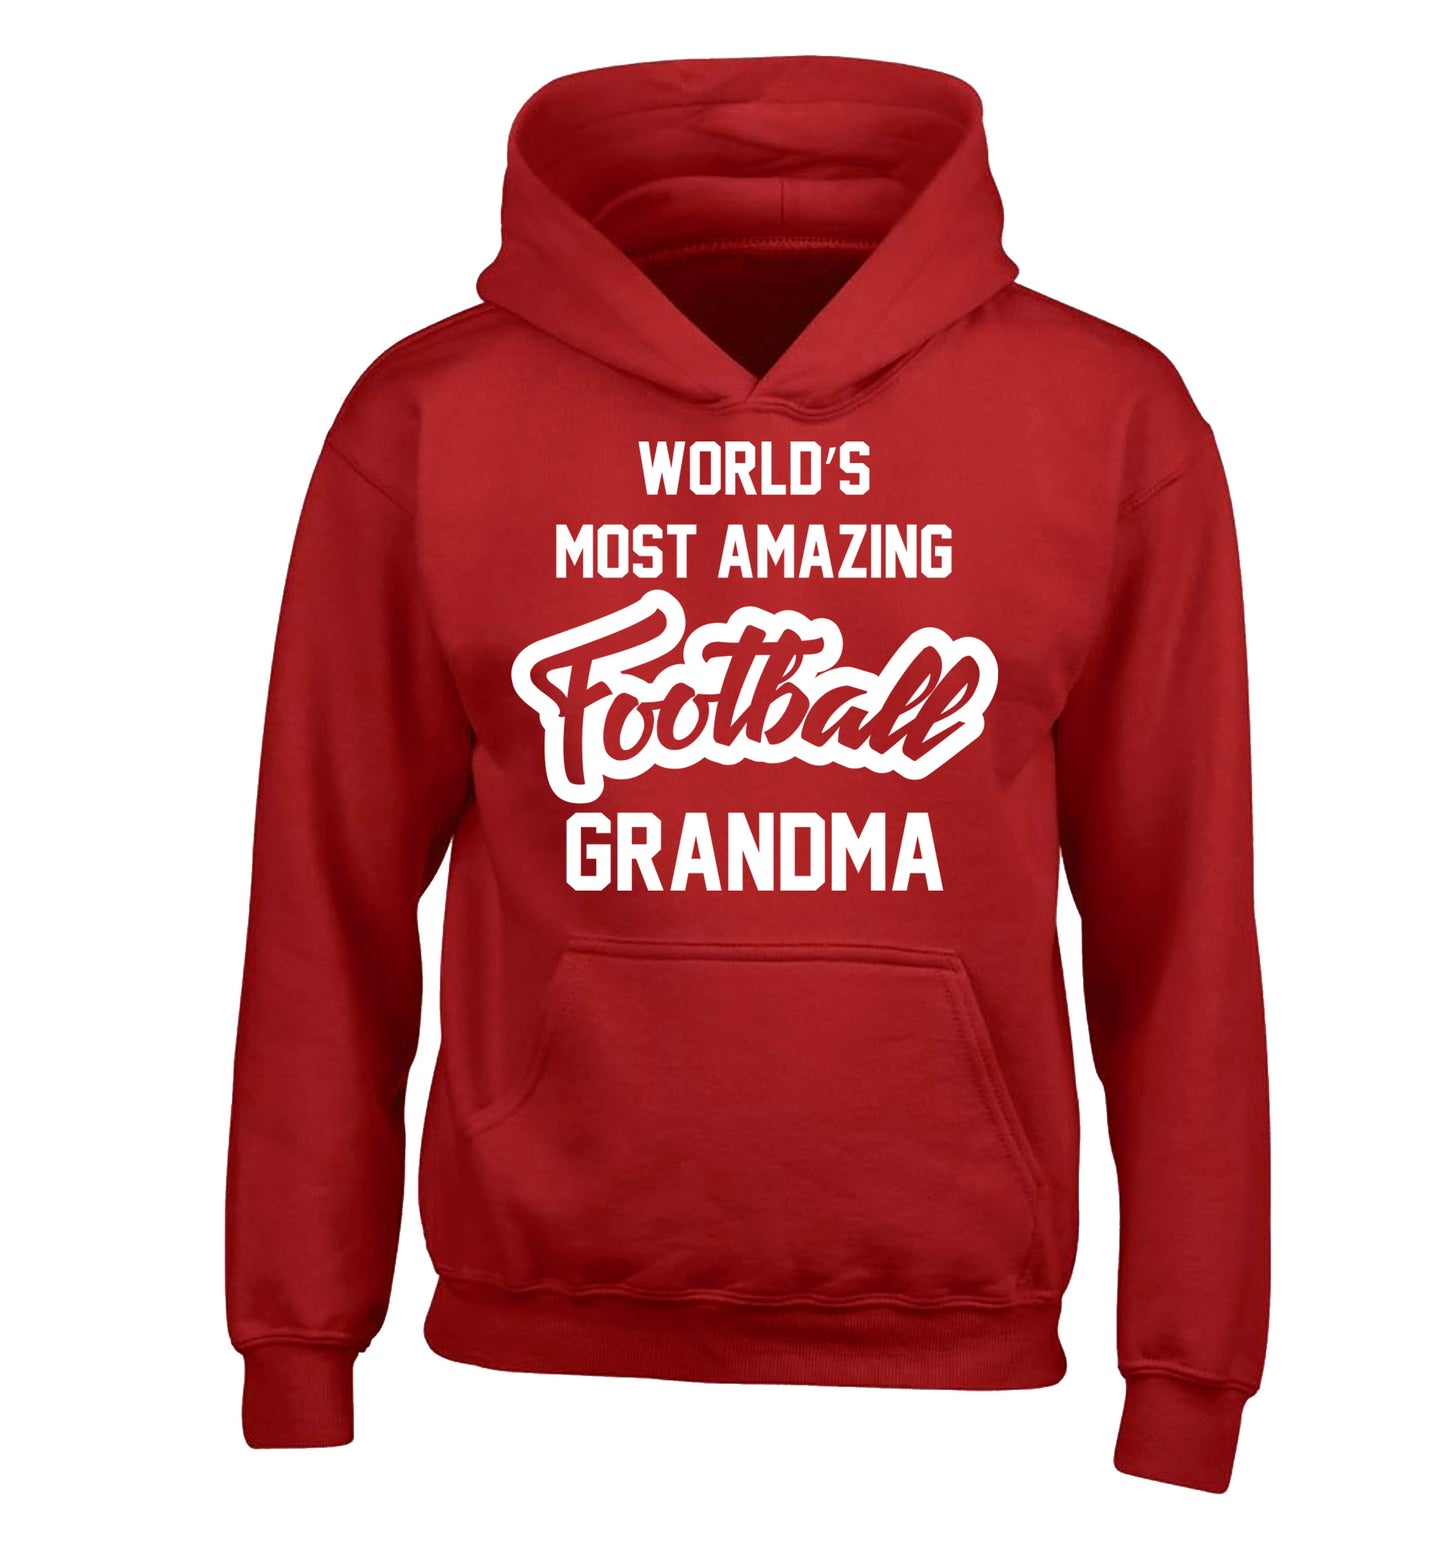 Worlds most amazing football grandma children's red hoodie 12-14 Years